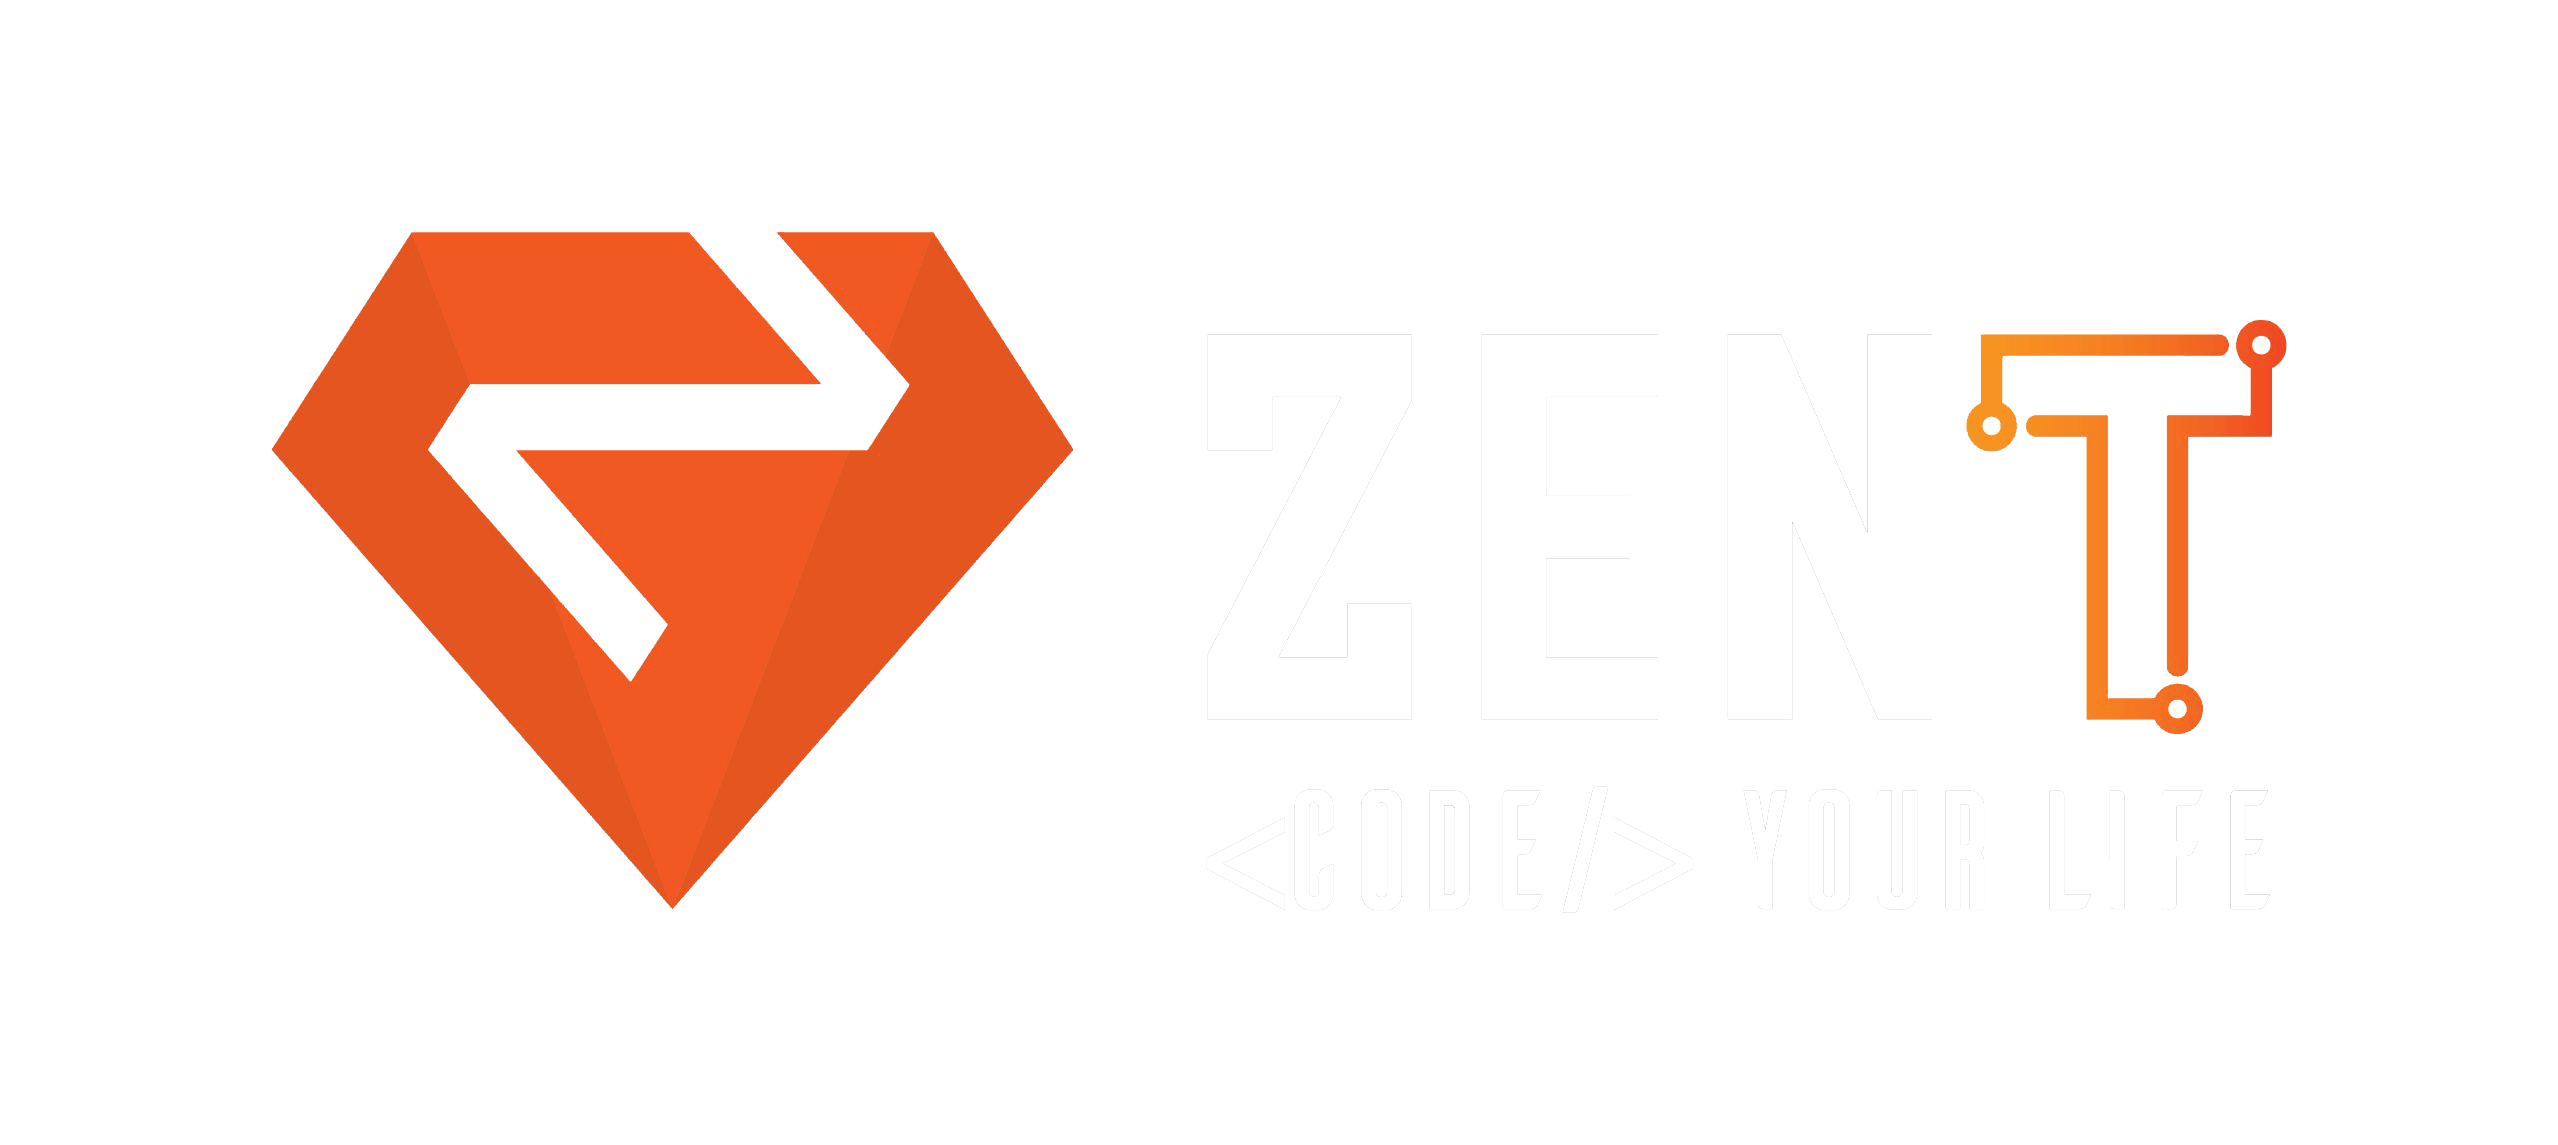 zent logo light